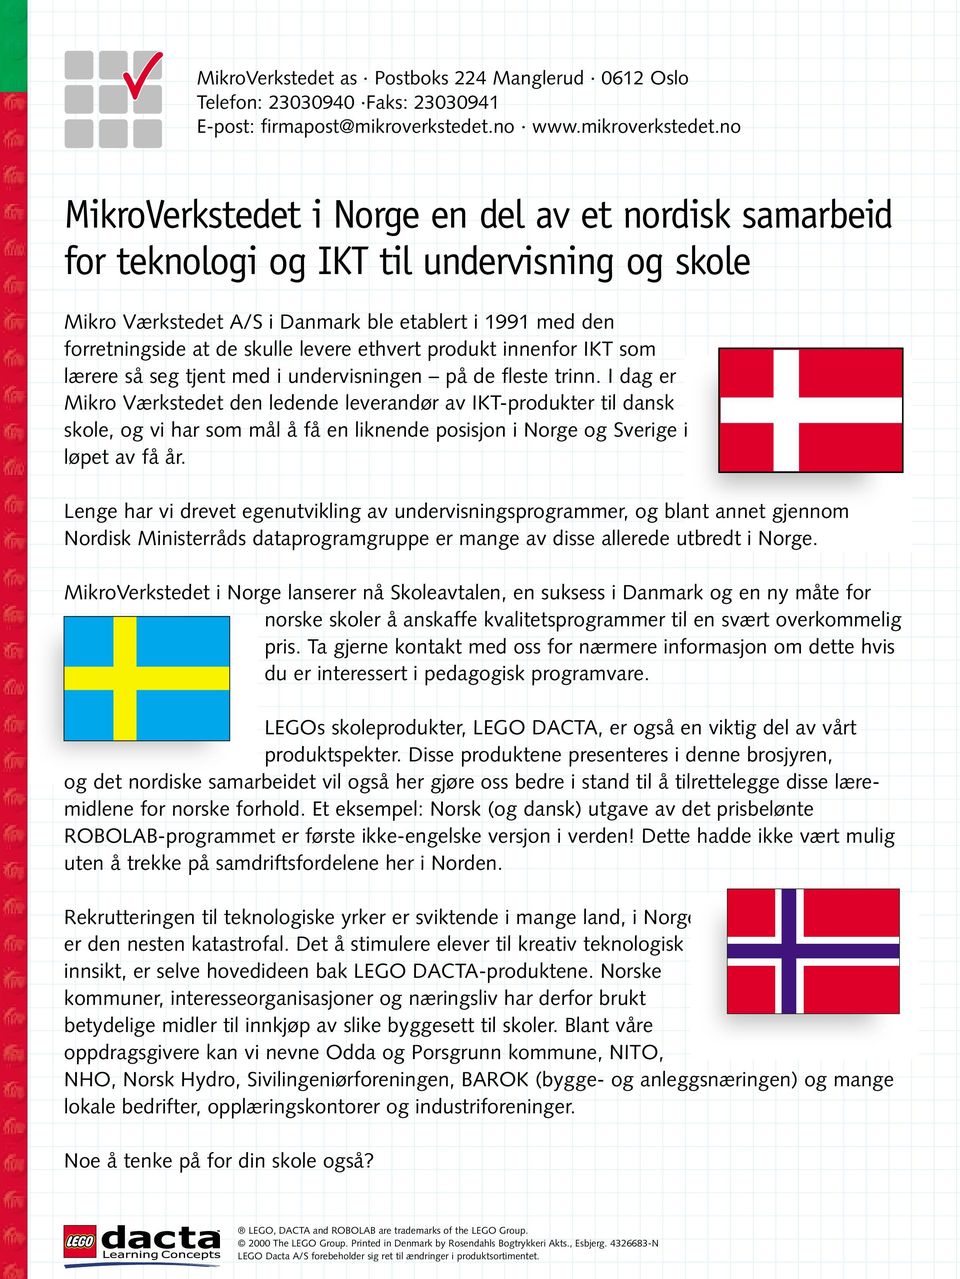 no MikroVerkstedet i Norge en del av et nordisk samarbeid for teknologi og IKT til undervisning og skole Mikro Værkstedet A/S i Danmark ble etablert i 1991 med den forretningside at de skulle levere